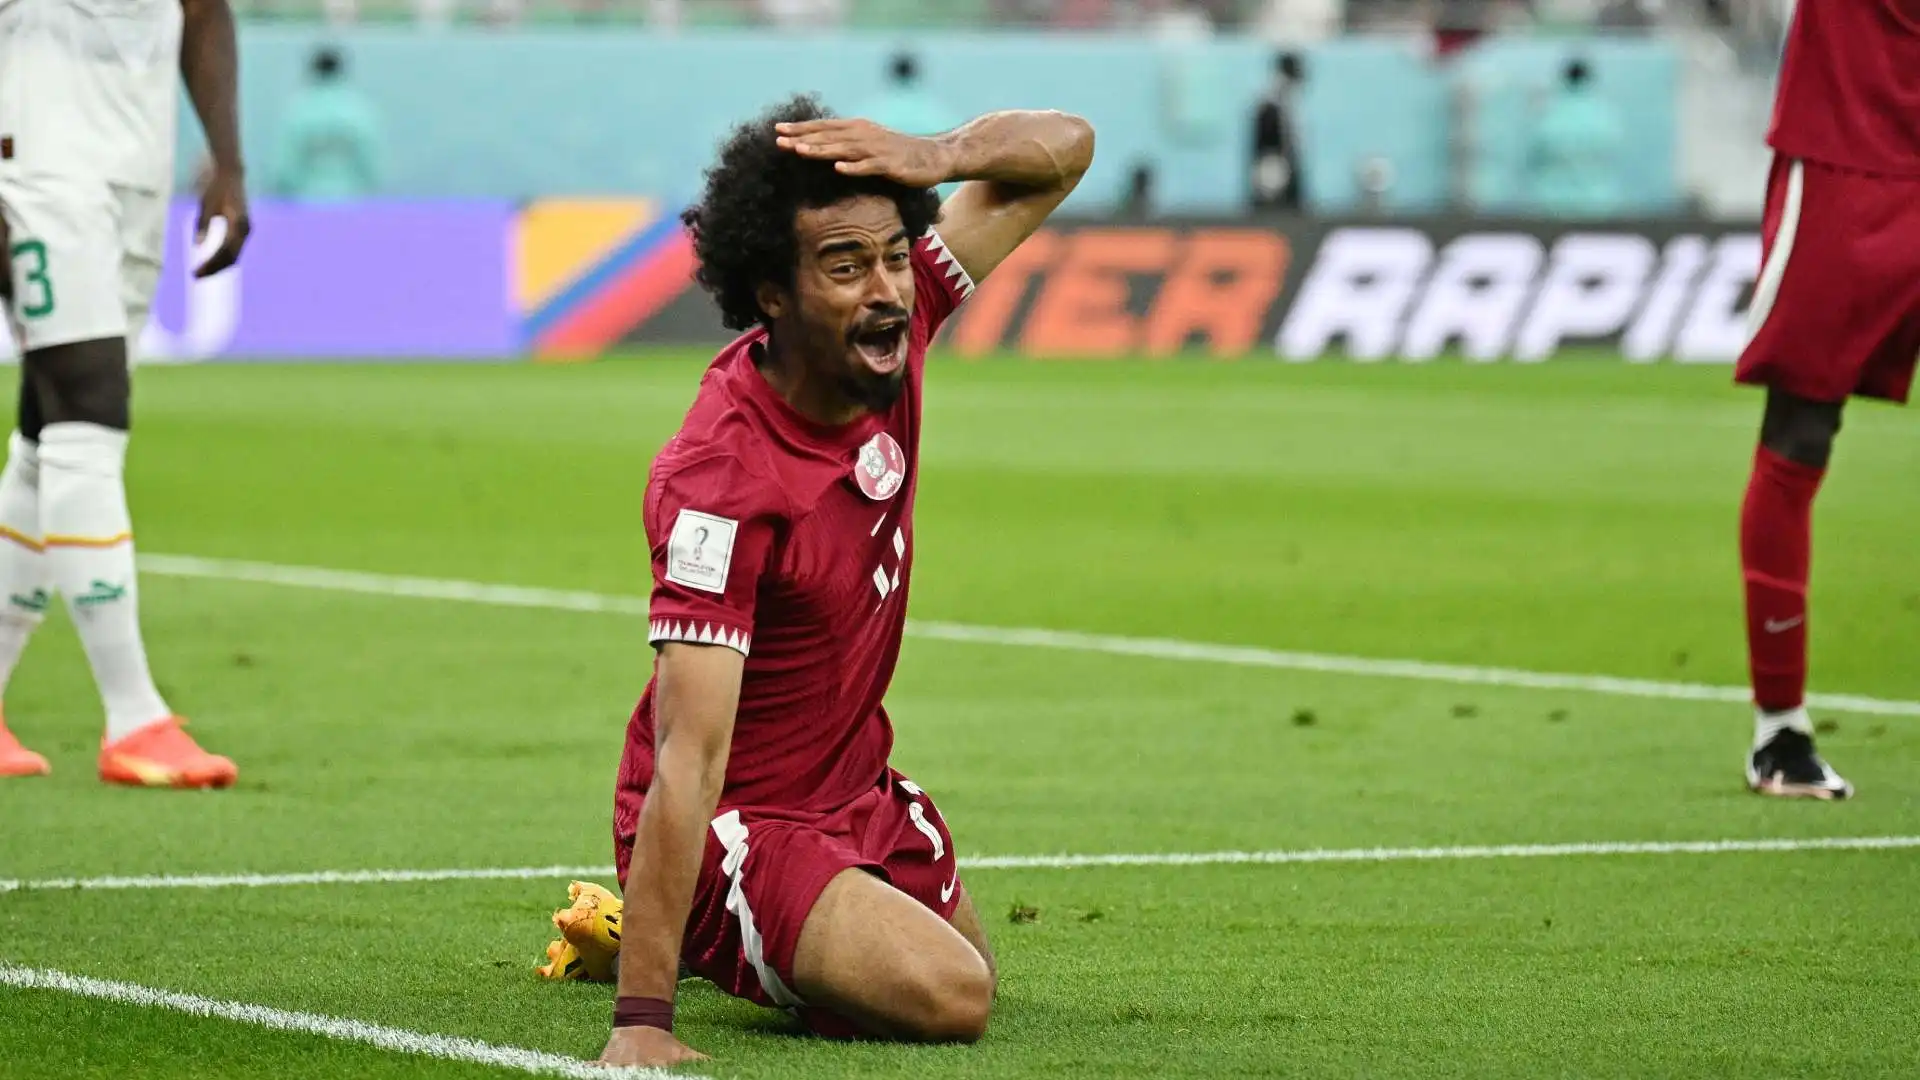 Il giocatore qatariota è rimasto senza parole